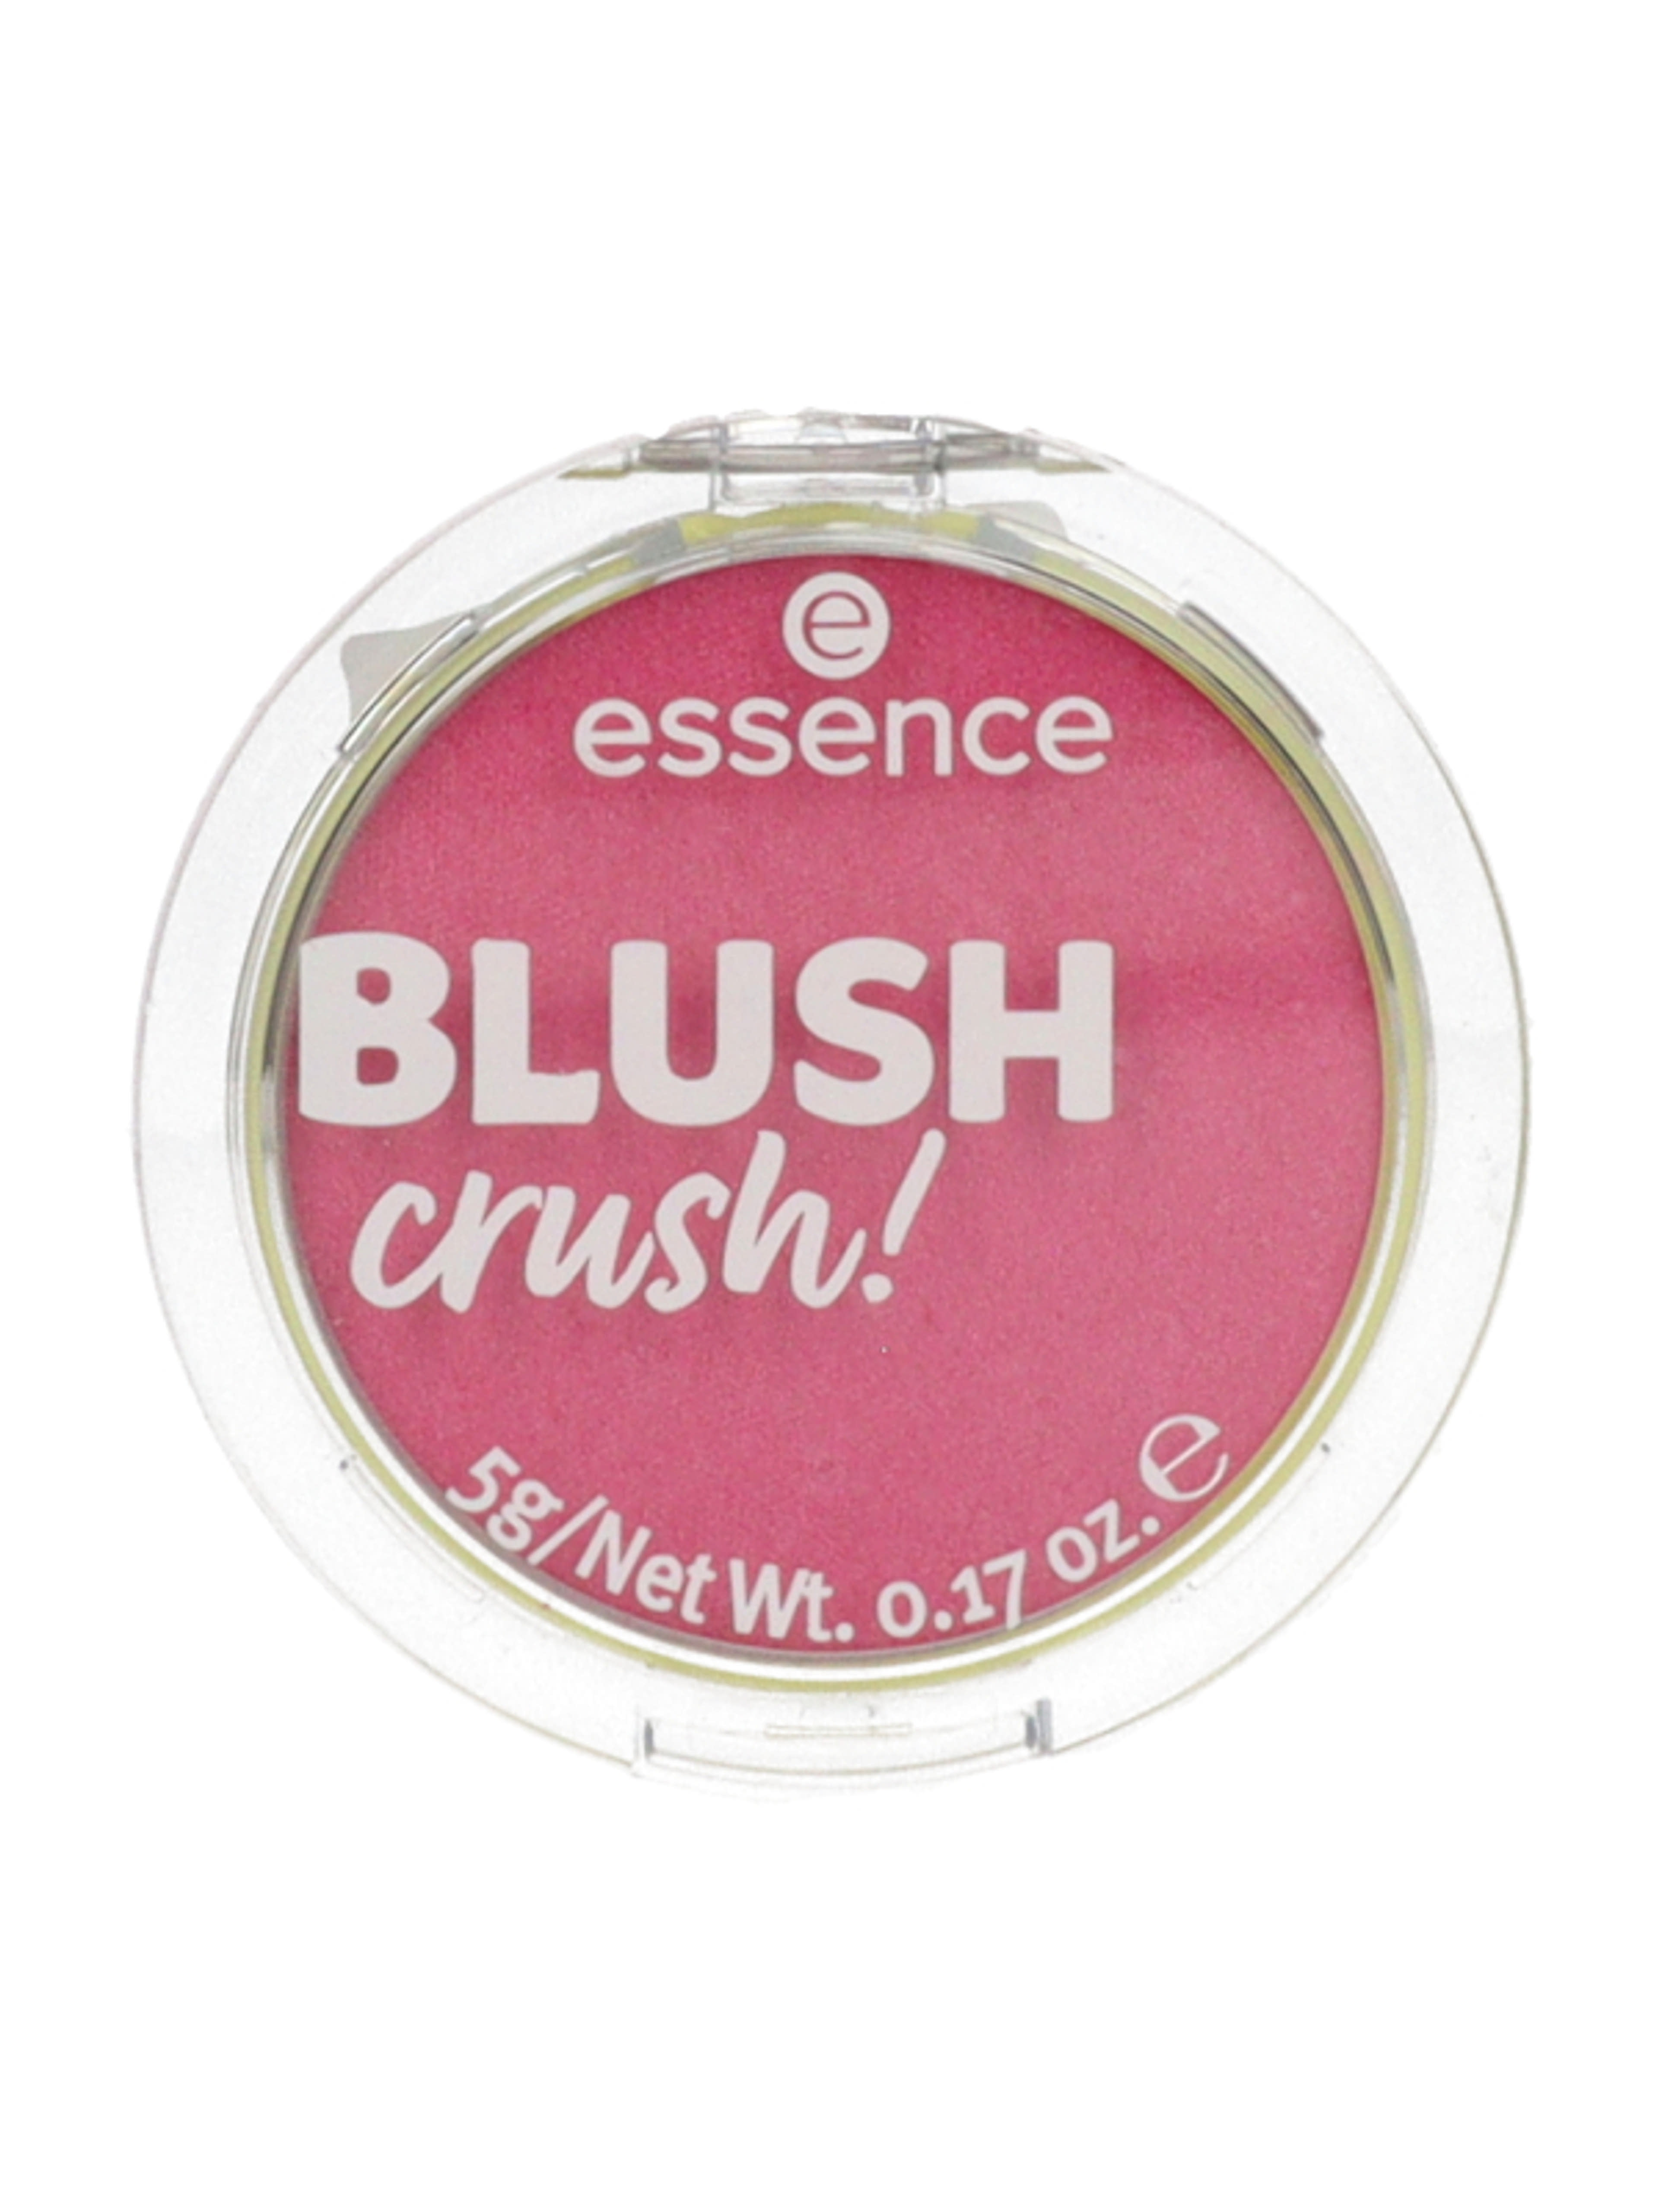 Essence Blush Crush! pirosító /50 - 1 db